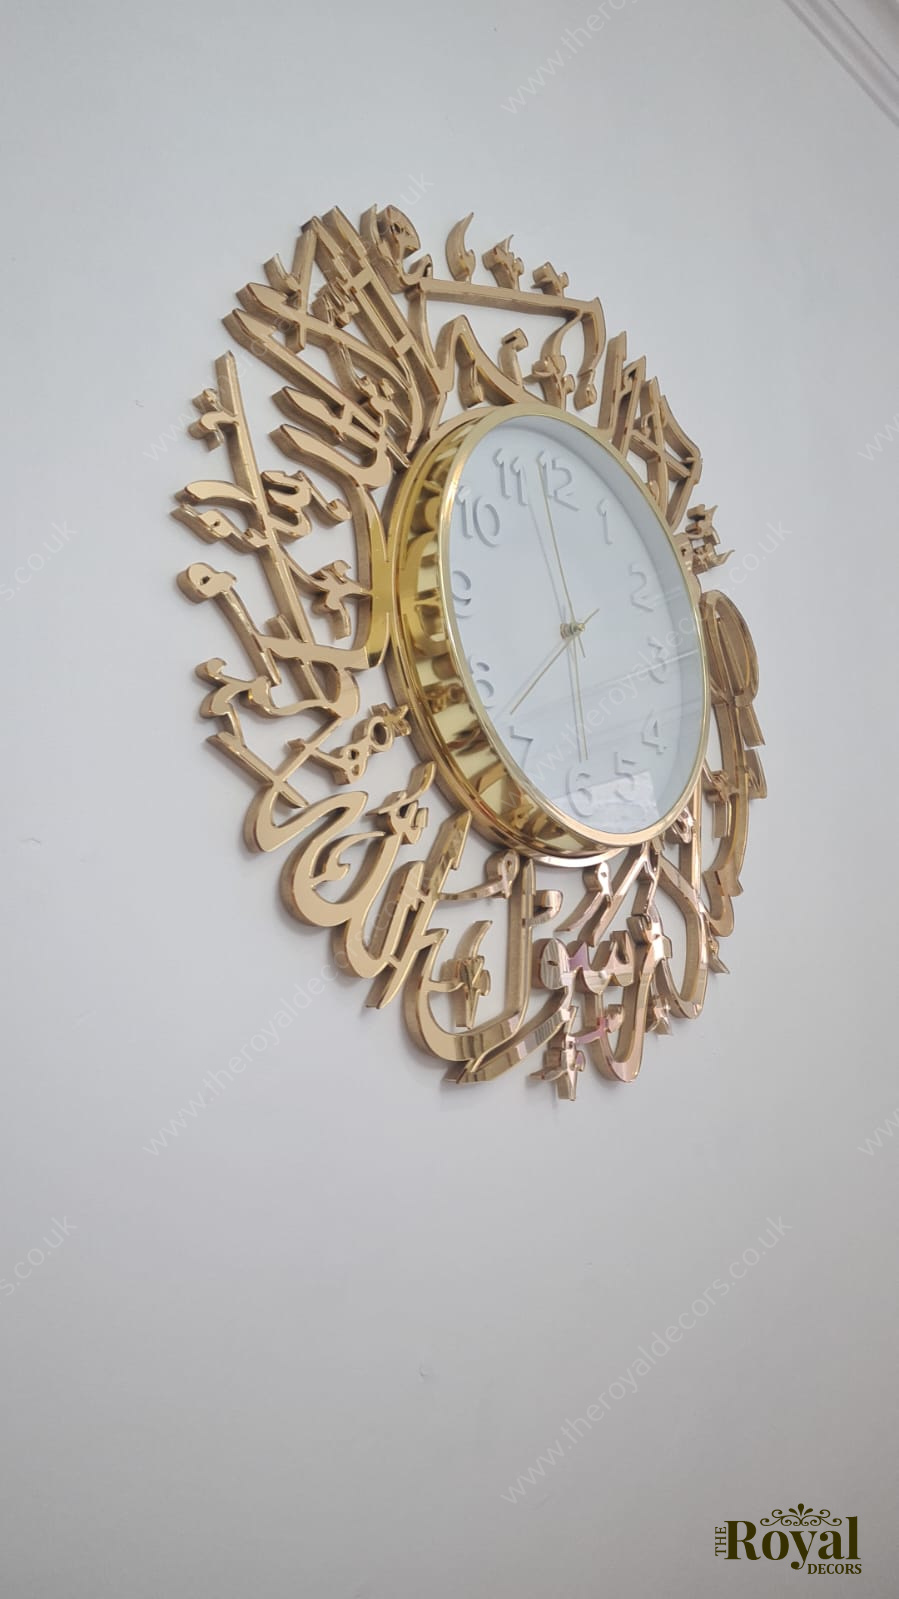 Mirror Kalima Shahada Clock Islamic Calligraphy Wall Art, Round Kalima Mirror clock, mirror Kalima Wall Clock, Modern Islamic Clock, Gold mirror clock, Modern clock art